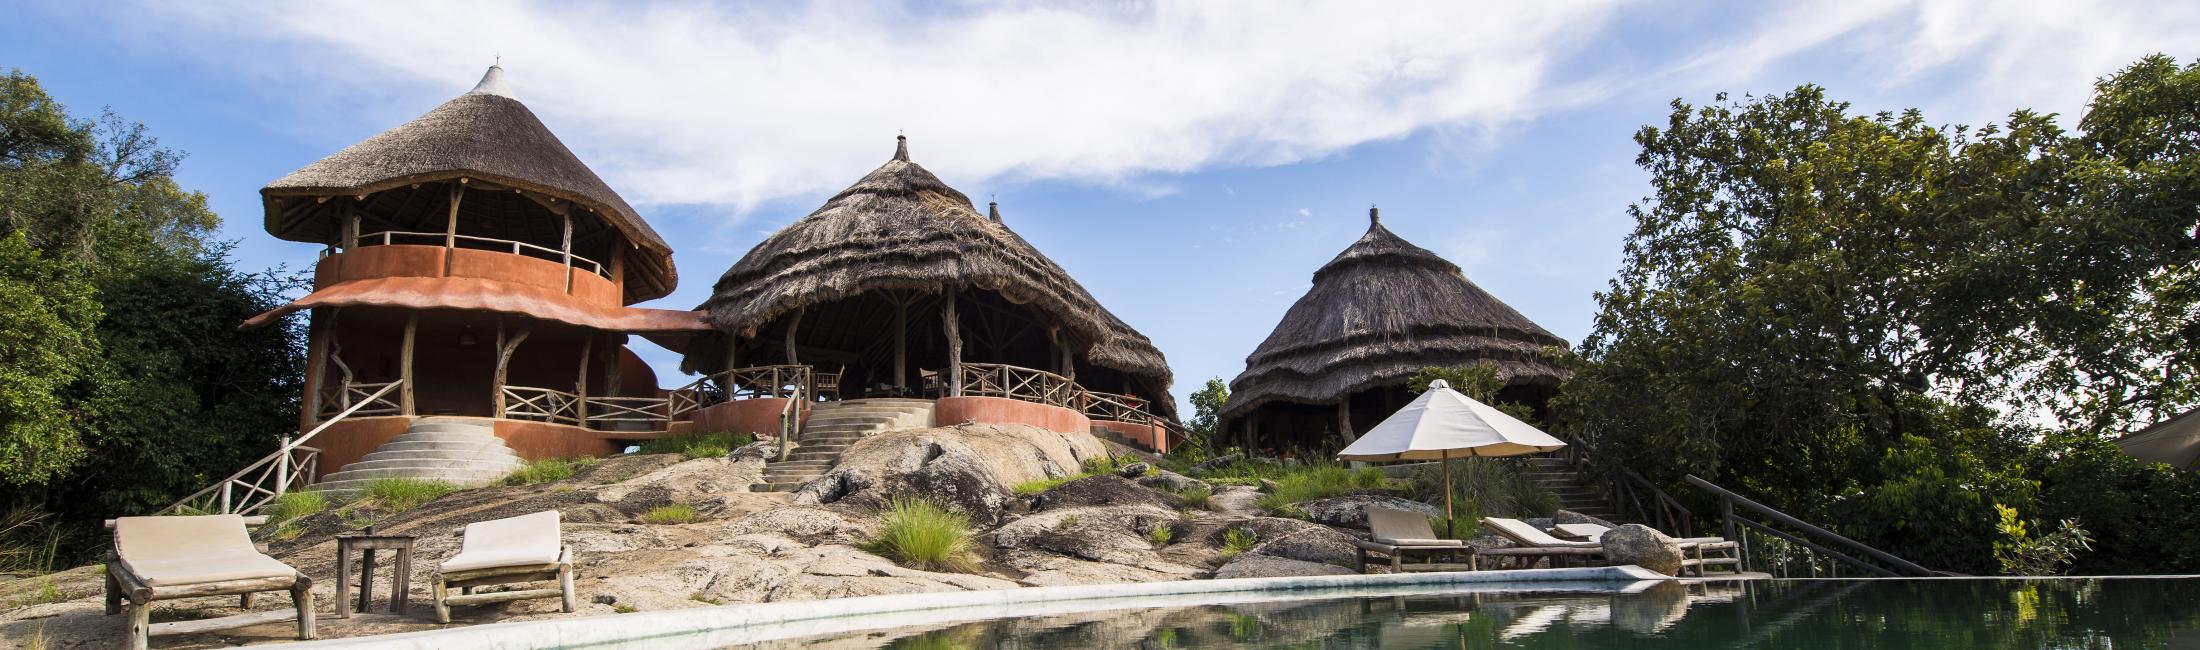 Mihingo Lodge (Lake Mburo National Park Uganda)